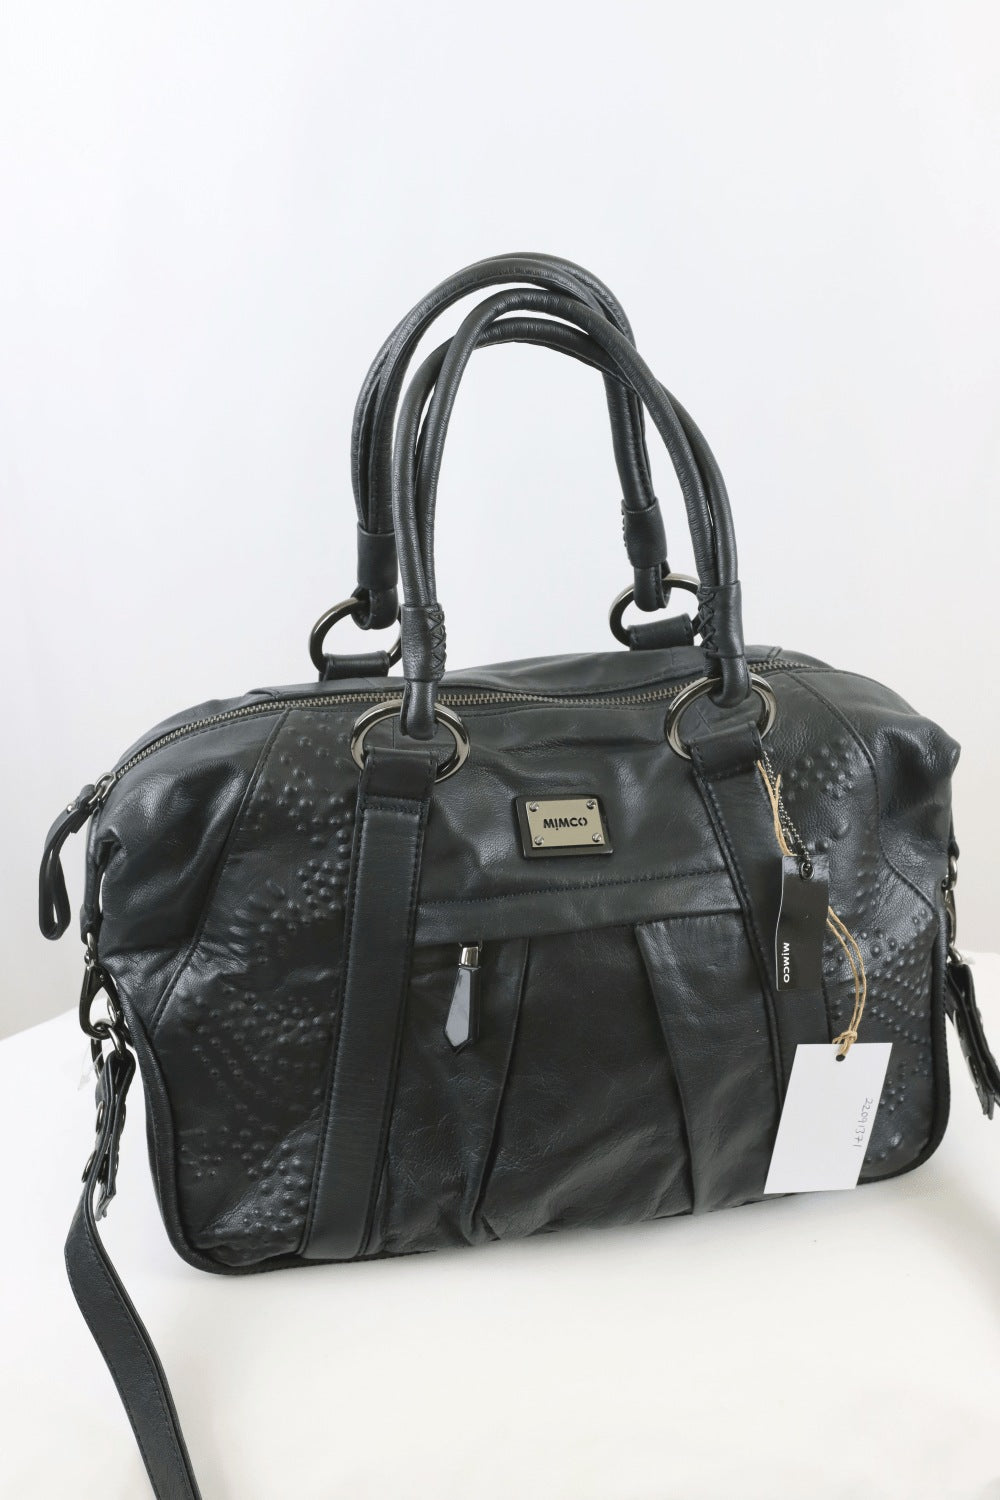 Mimco Large Shoulder Bag Black